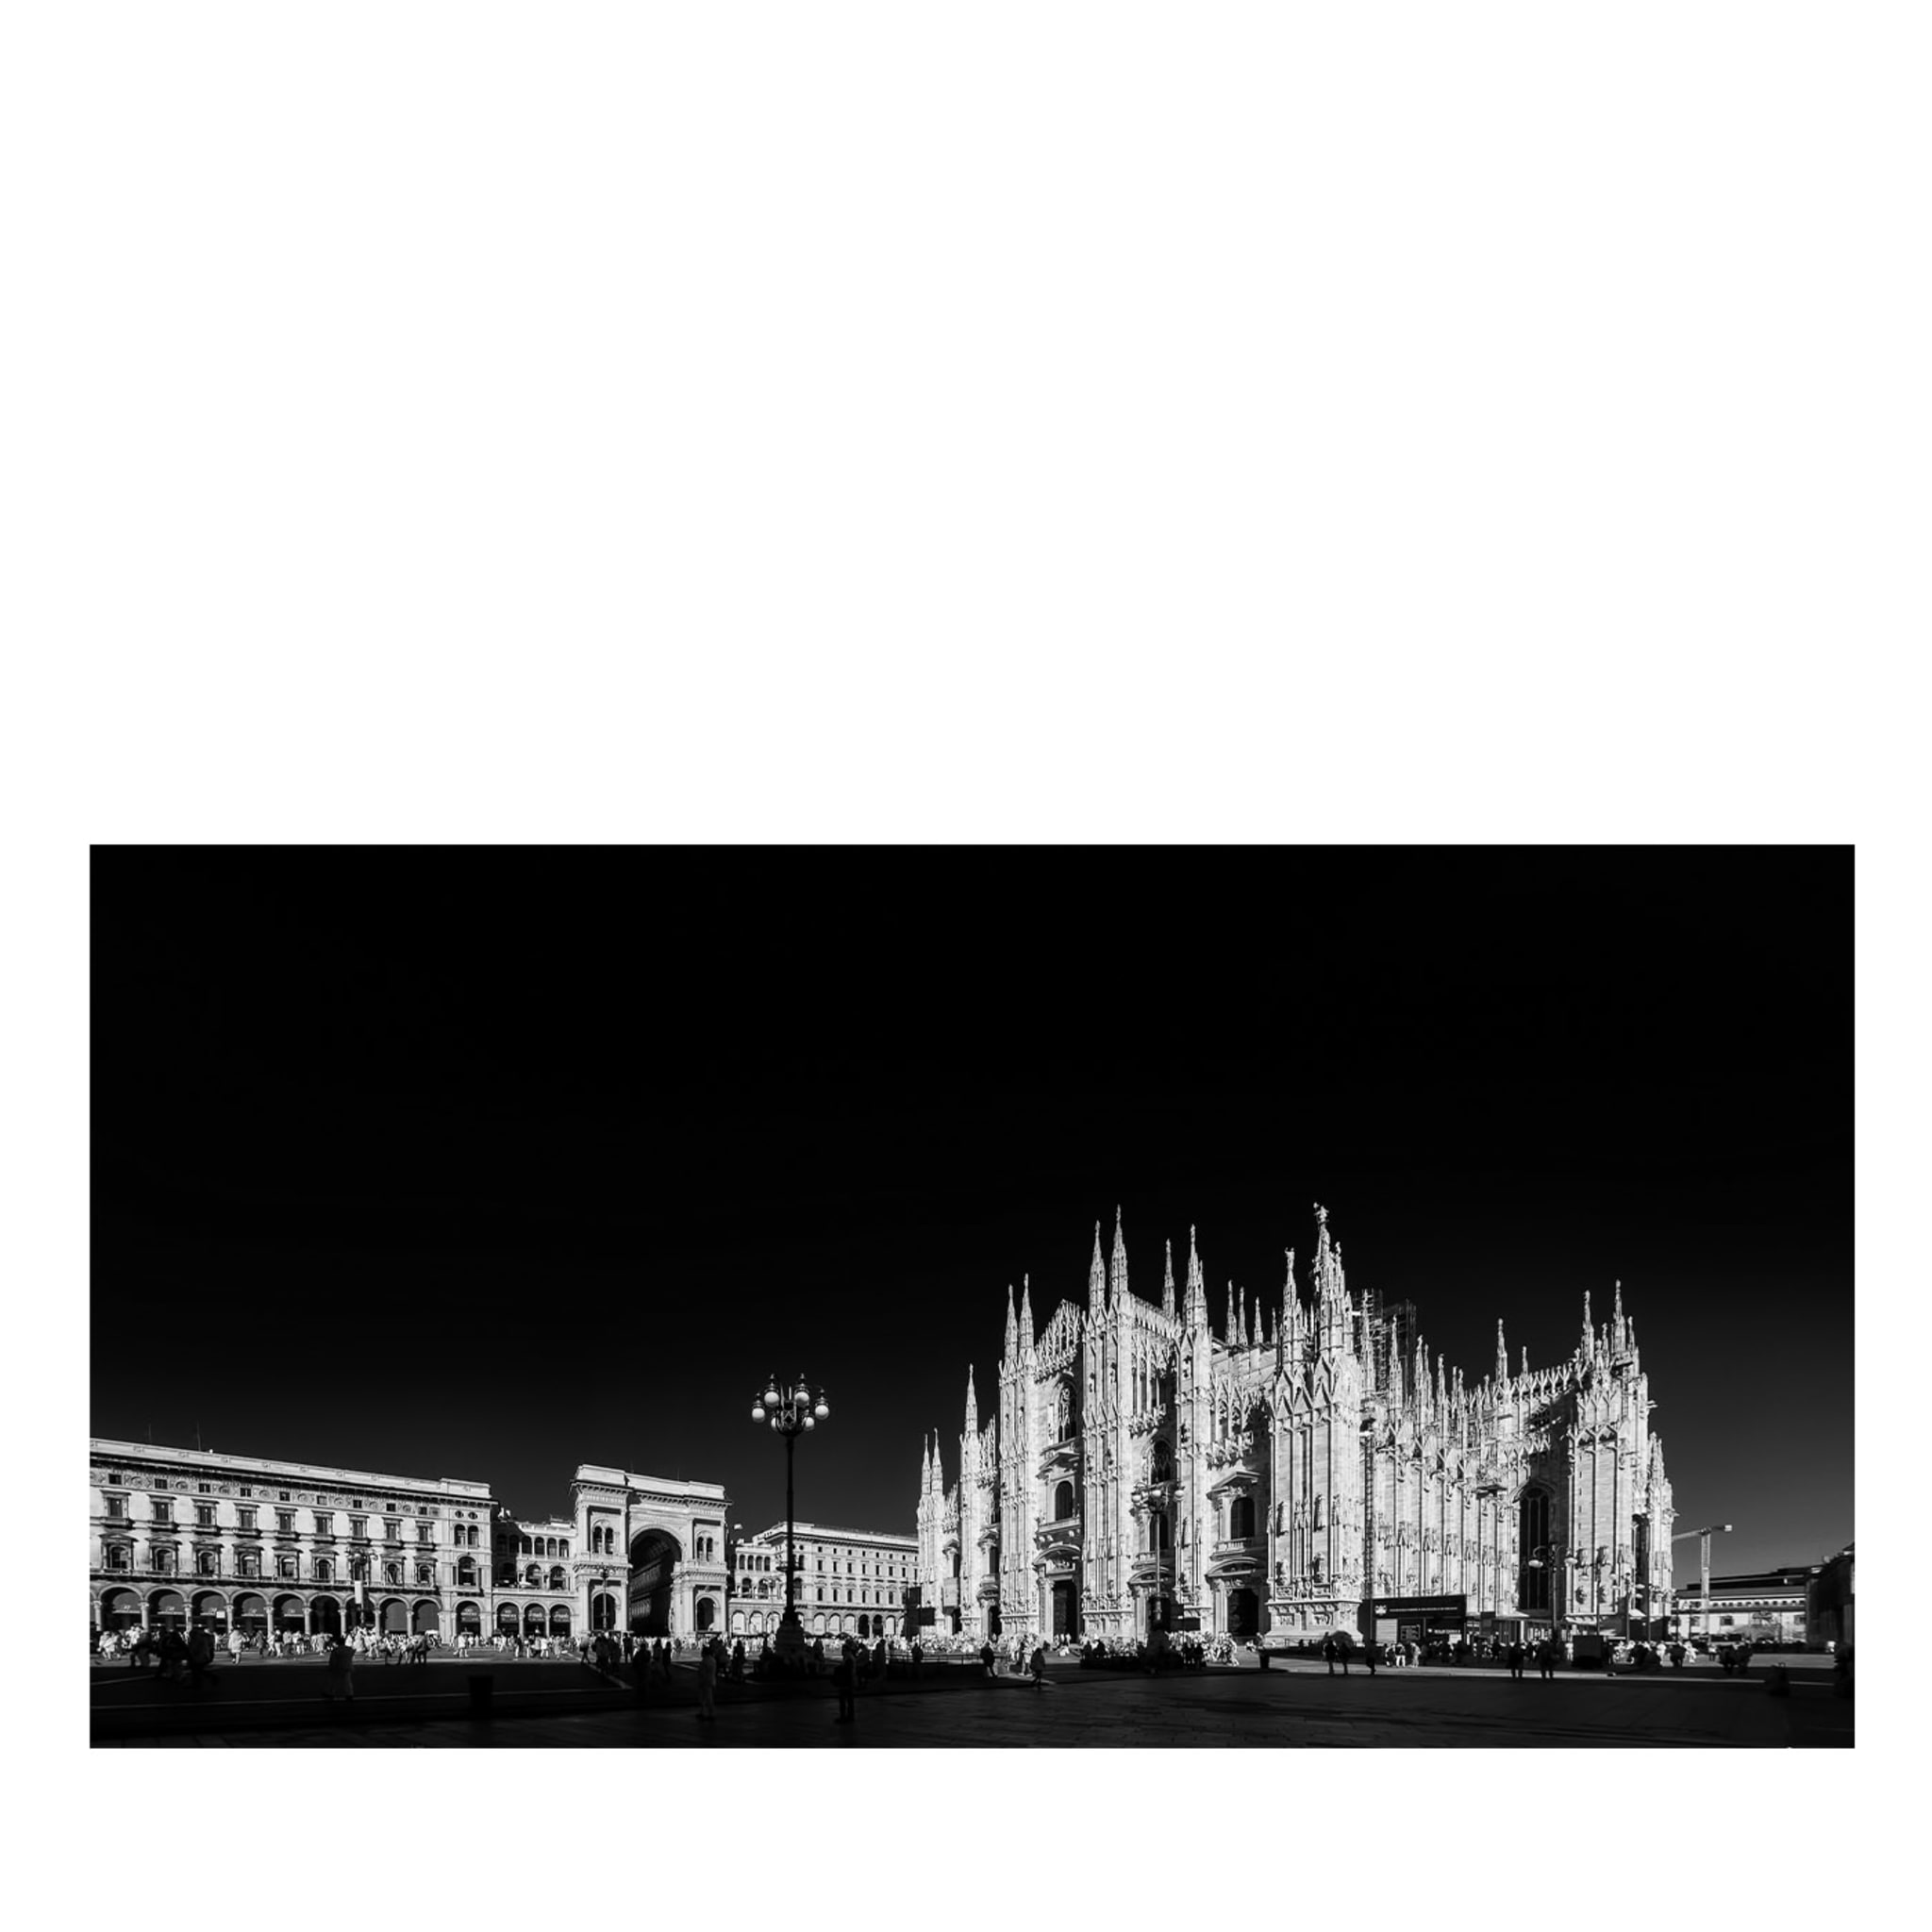 Fotografía de la Piazza del Duomo - Vista principal